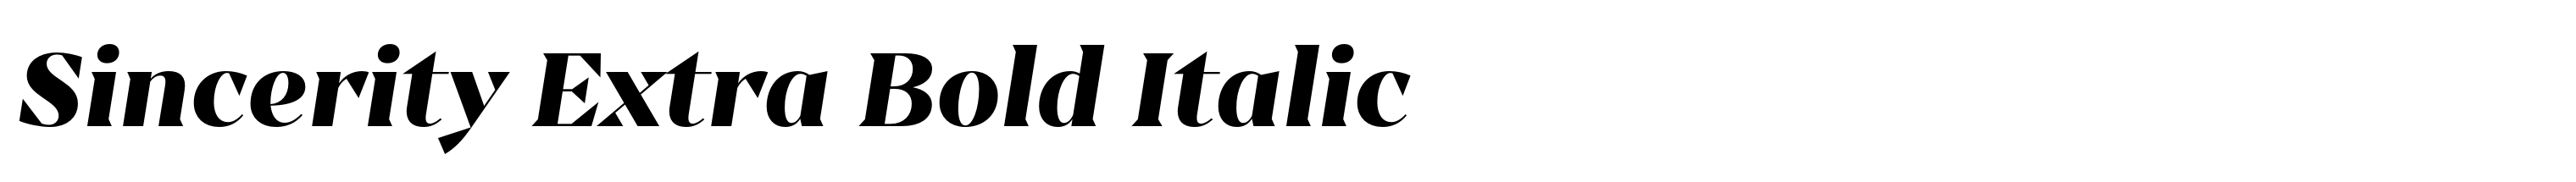 Sincerity Extra Bold Italic